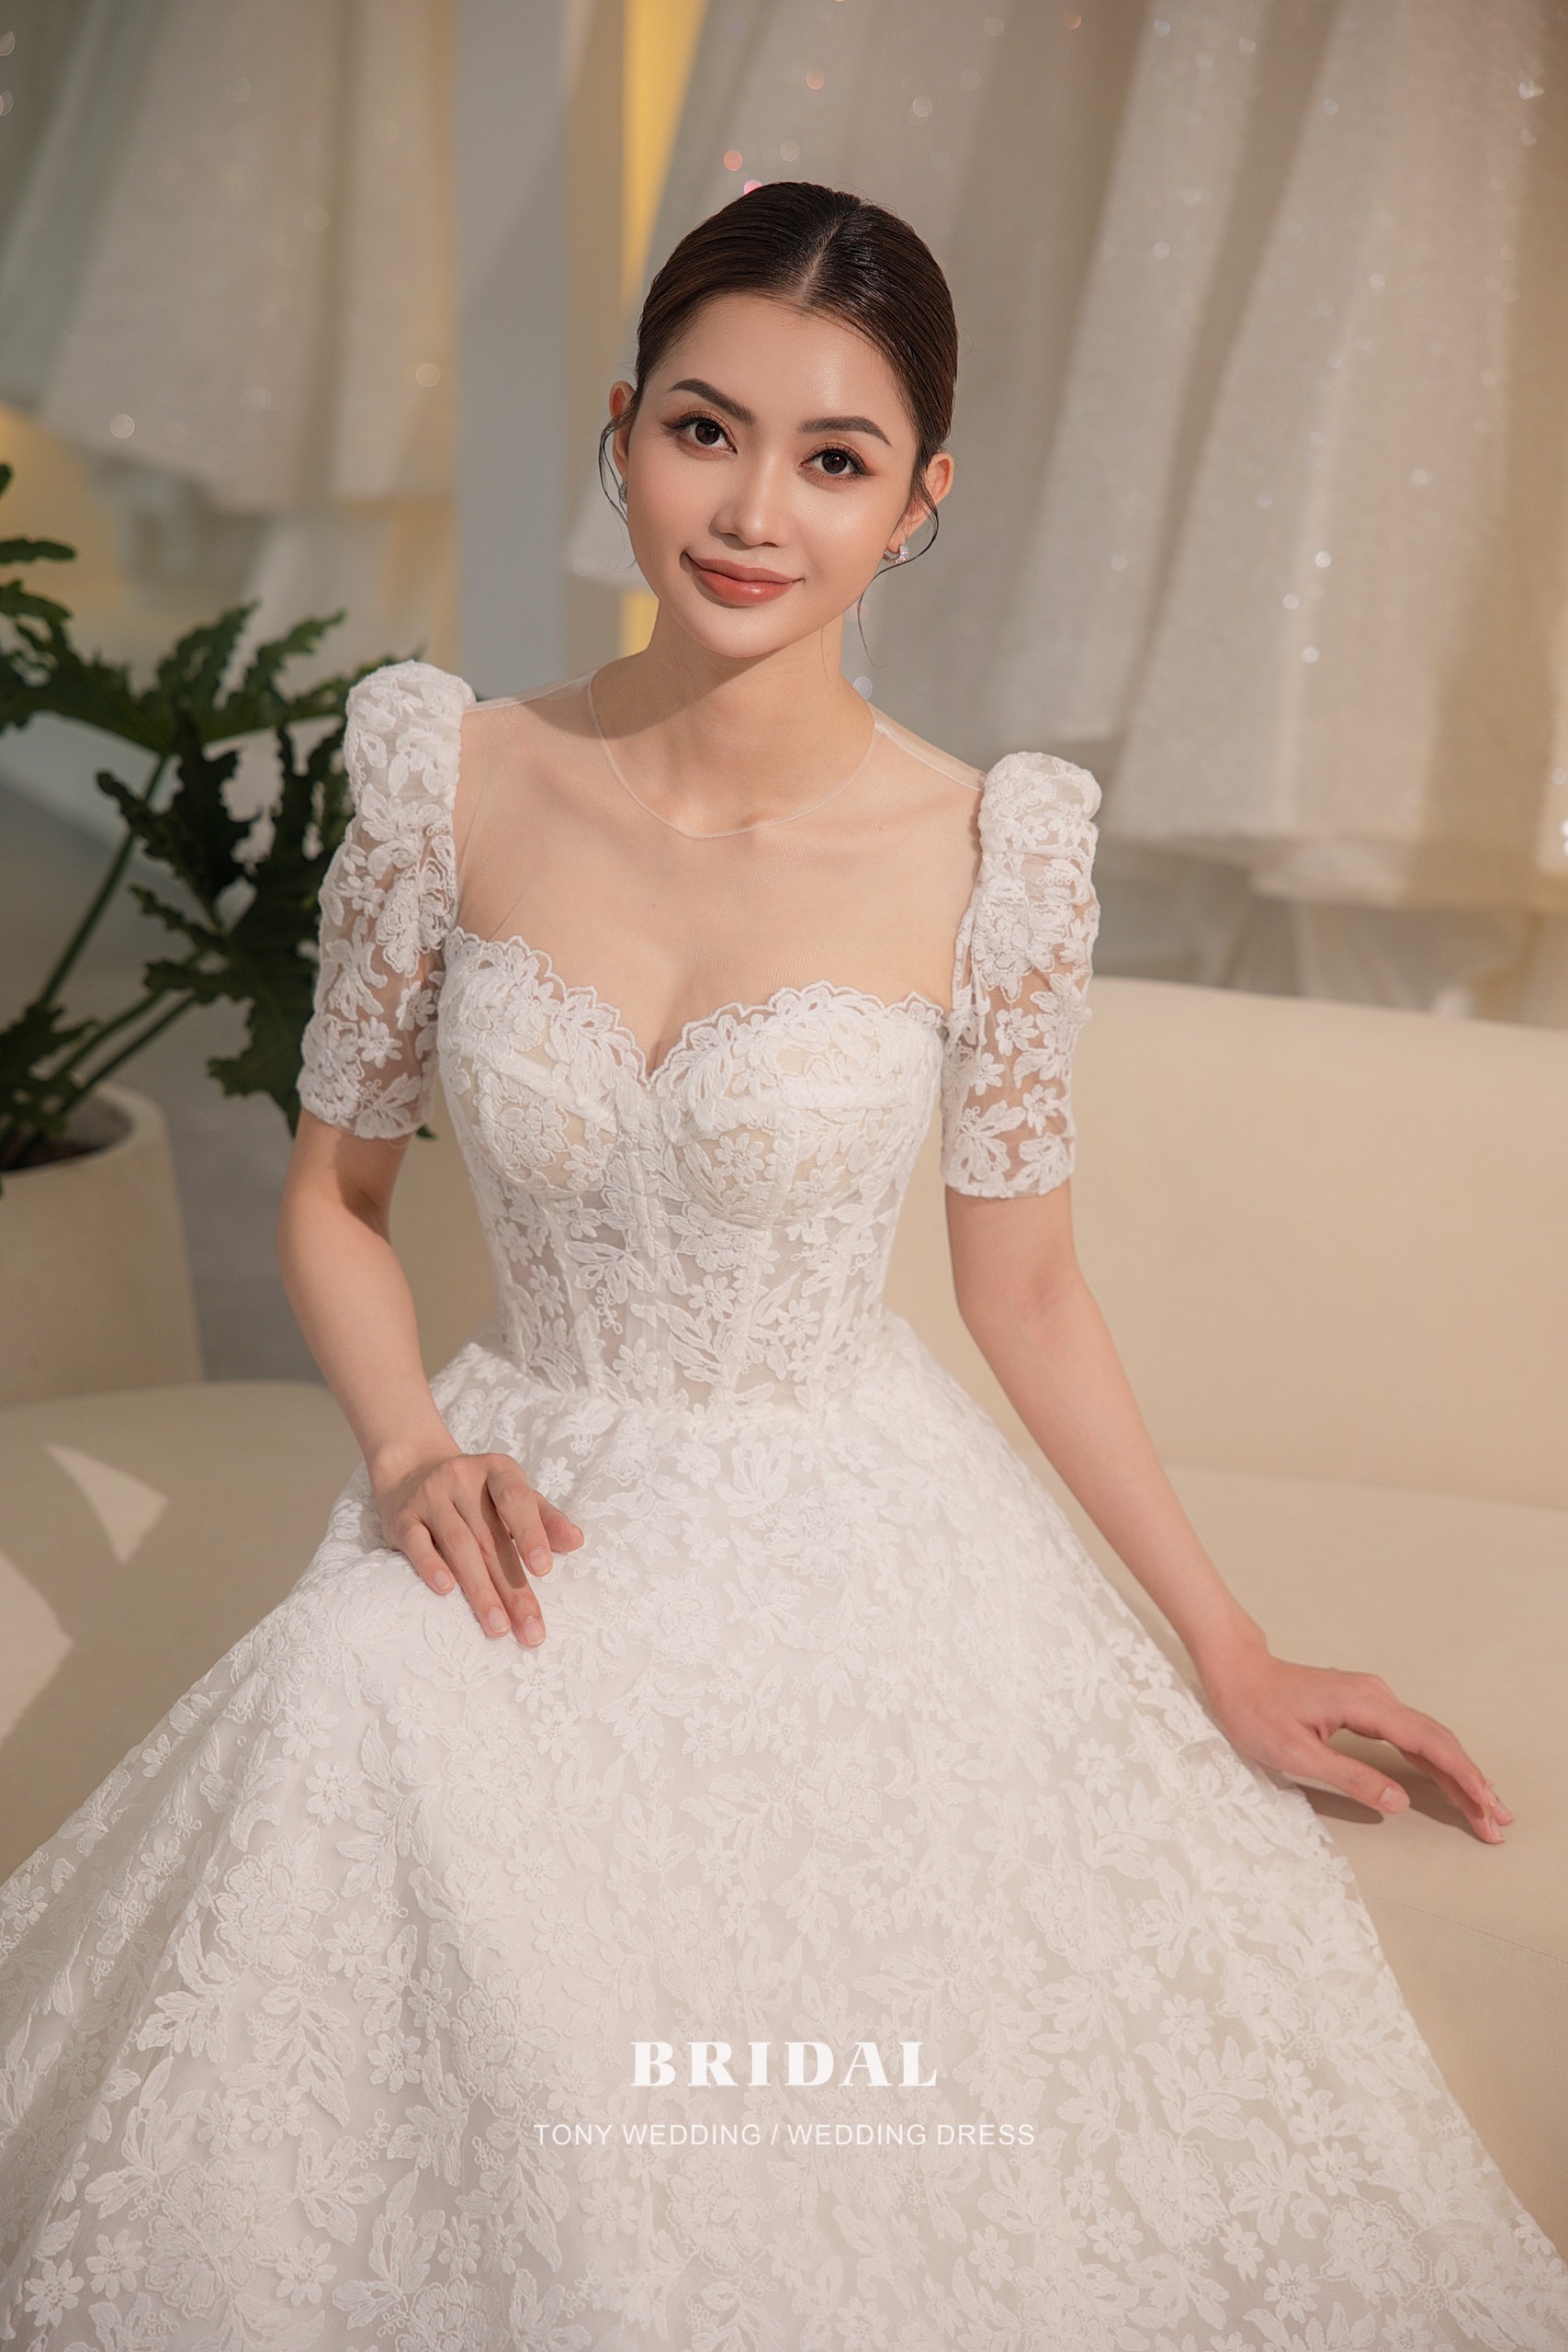 Váy cưới Hàn Quốc  xu hướng váy cưới năm 2020